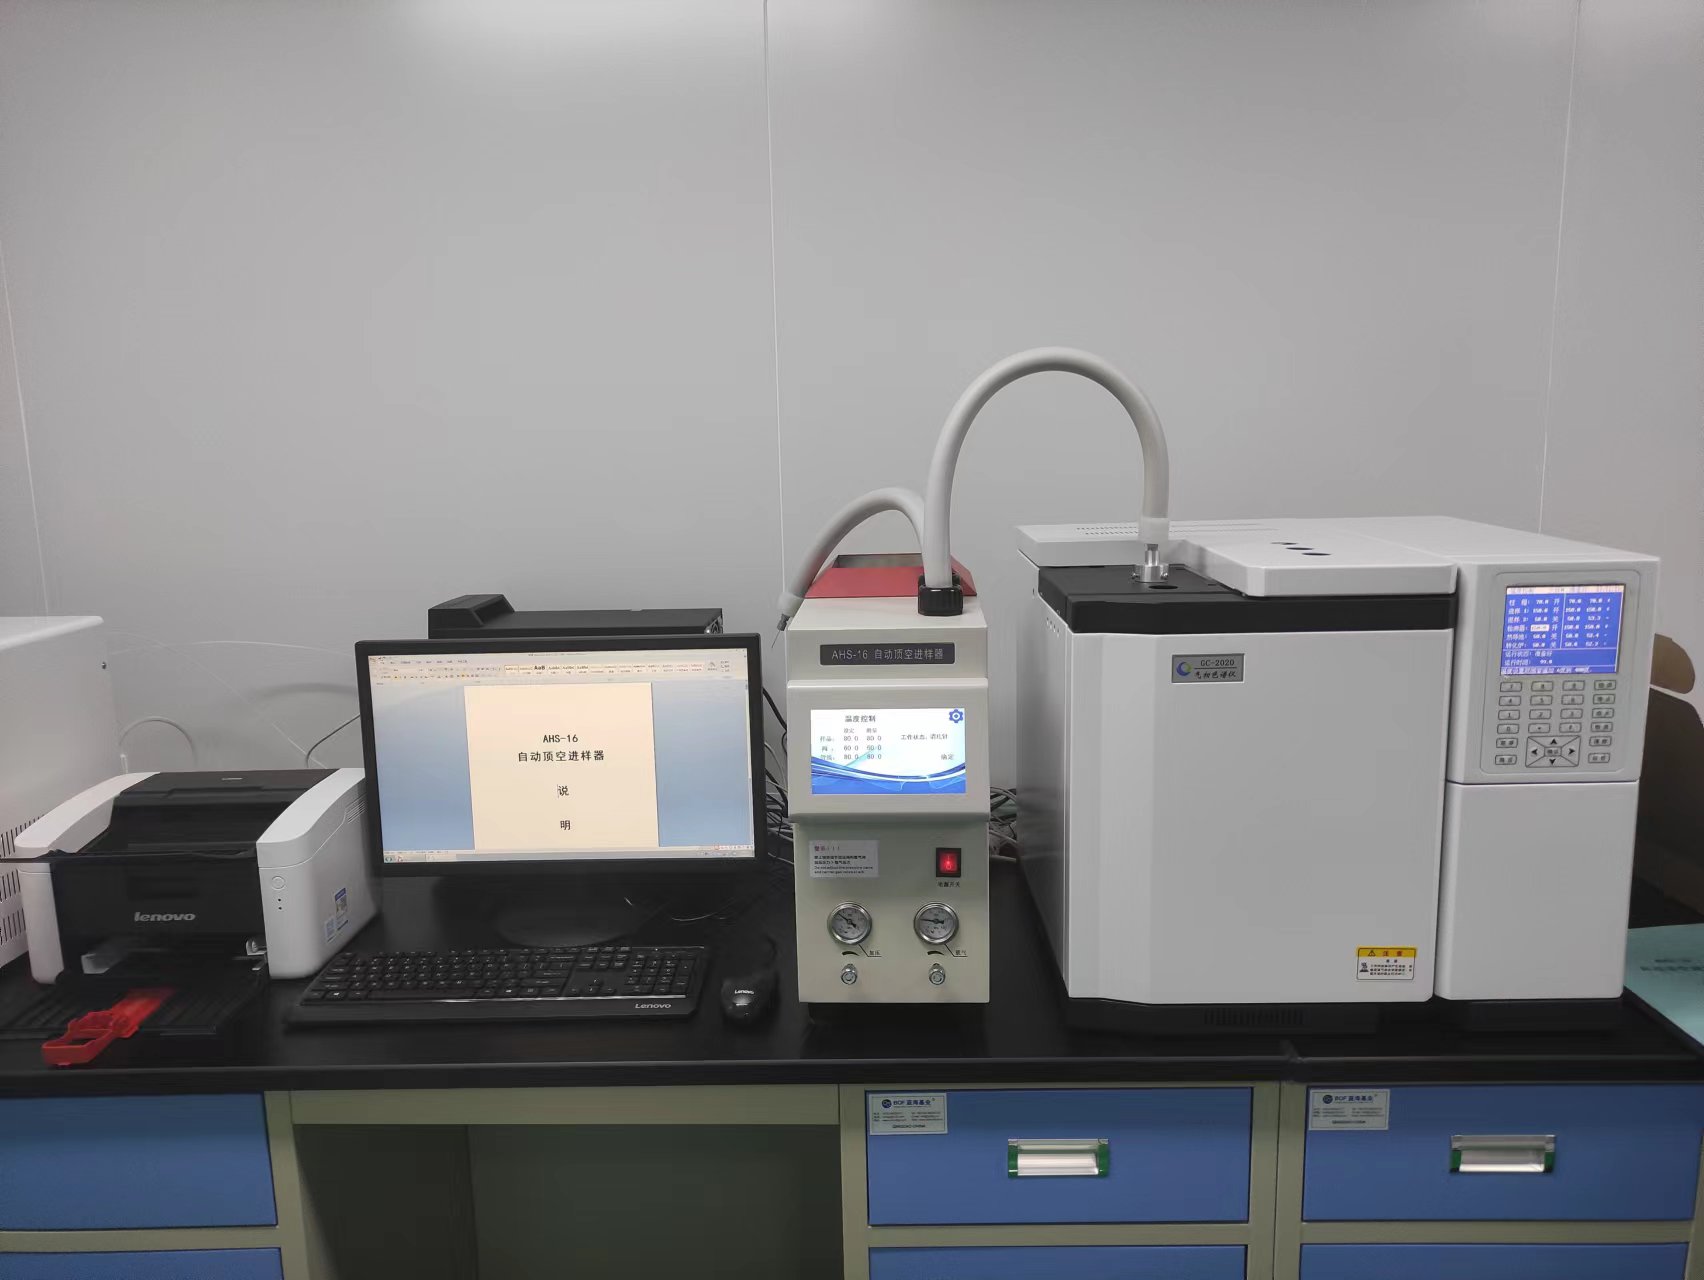 GB/T10004-2008标准对气相色谱仪分析溶剂残留要求与仪器配置